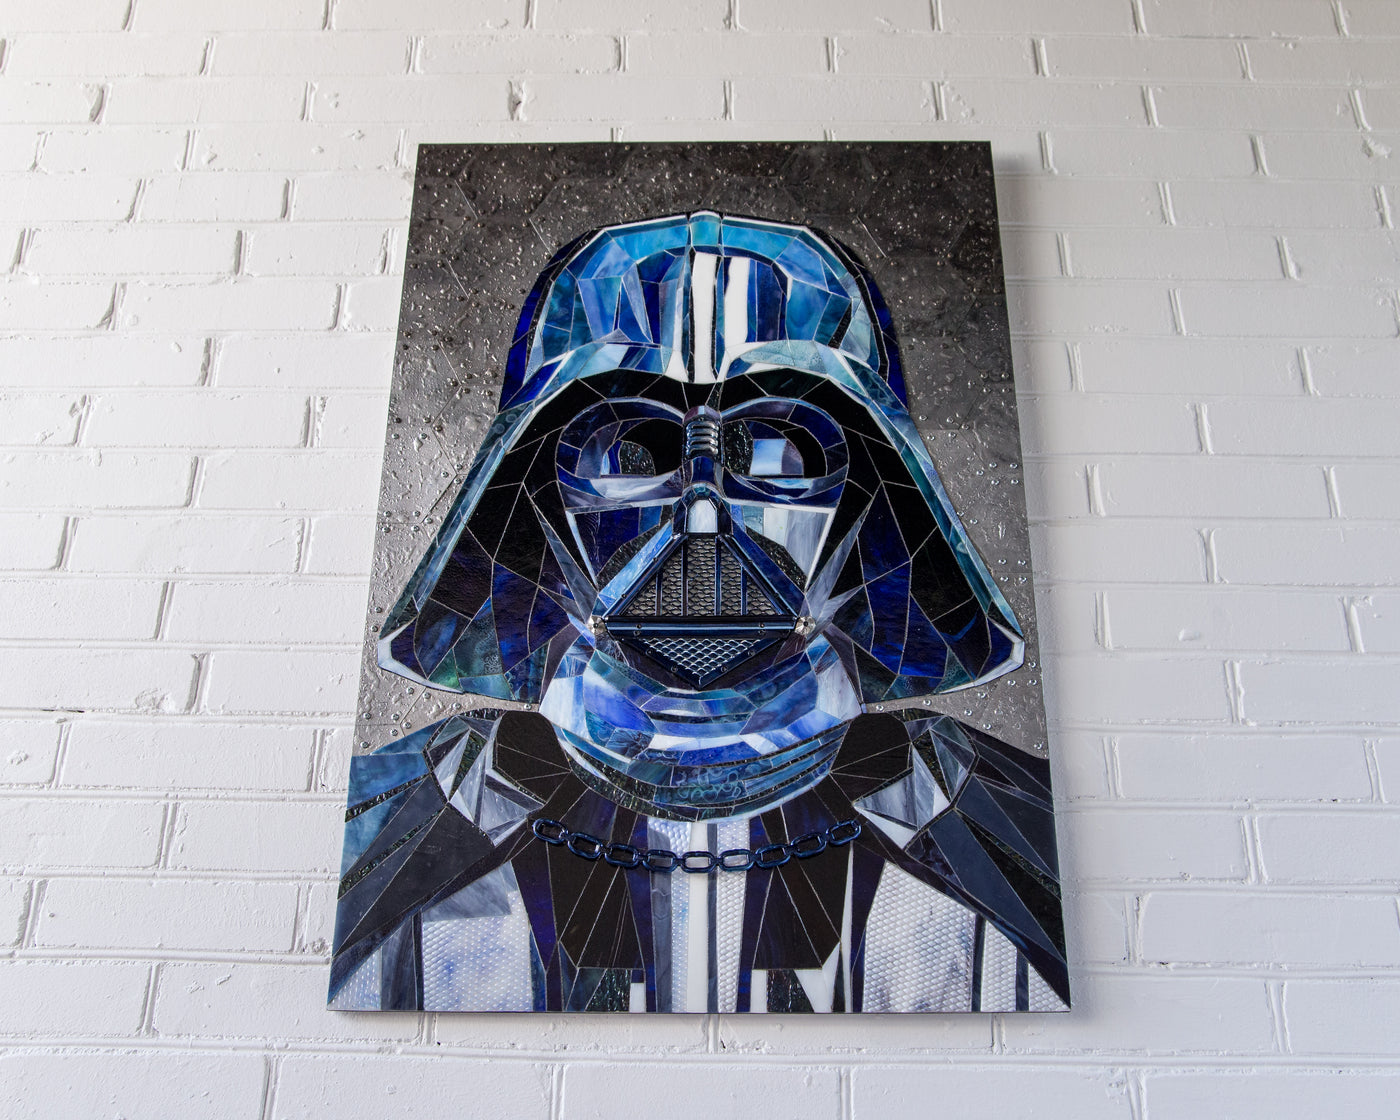 Darth Vader mosaic